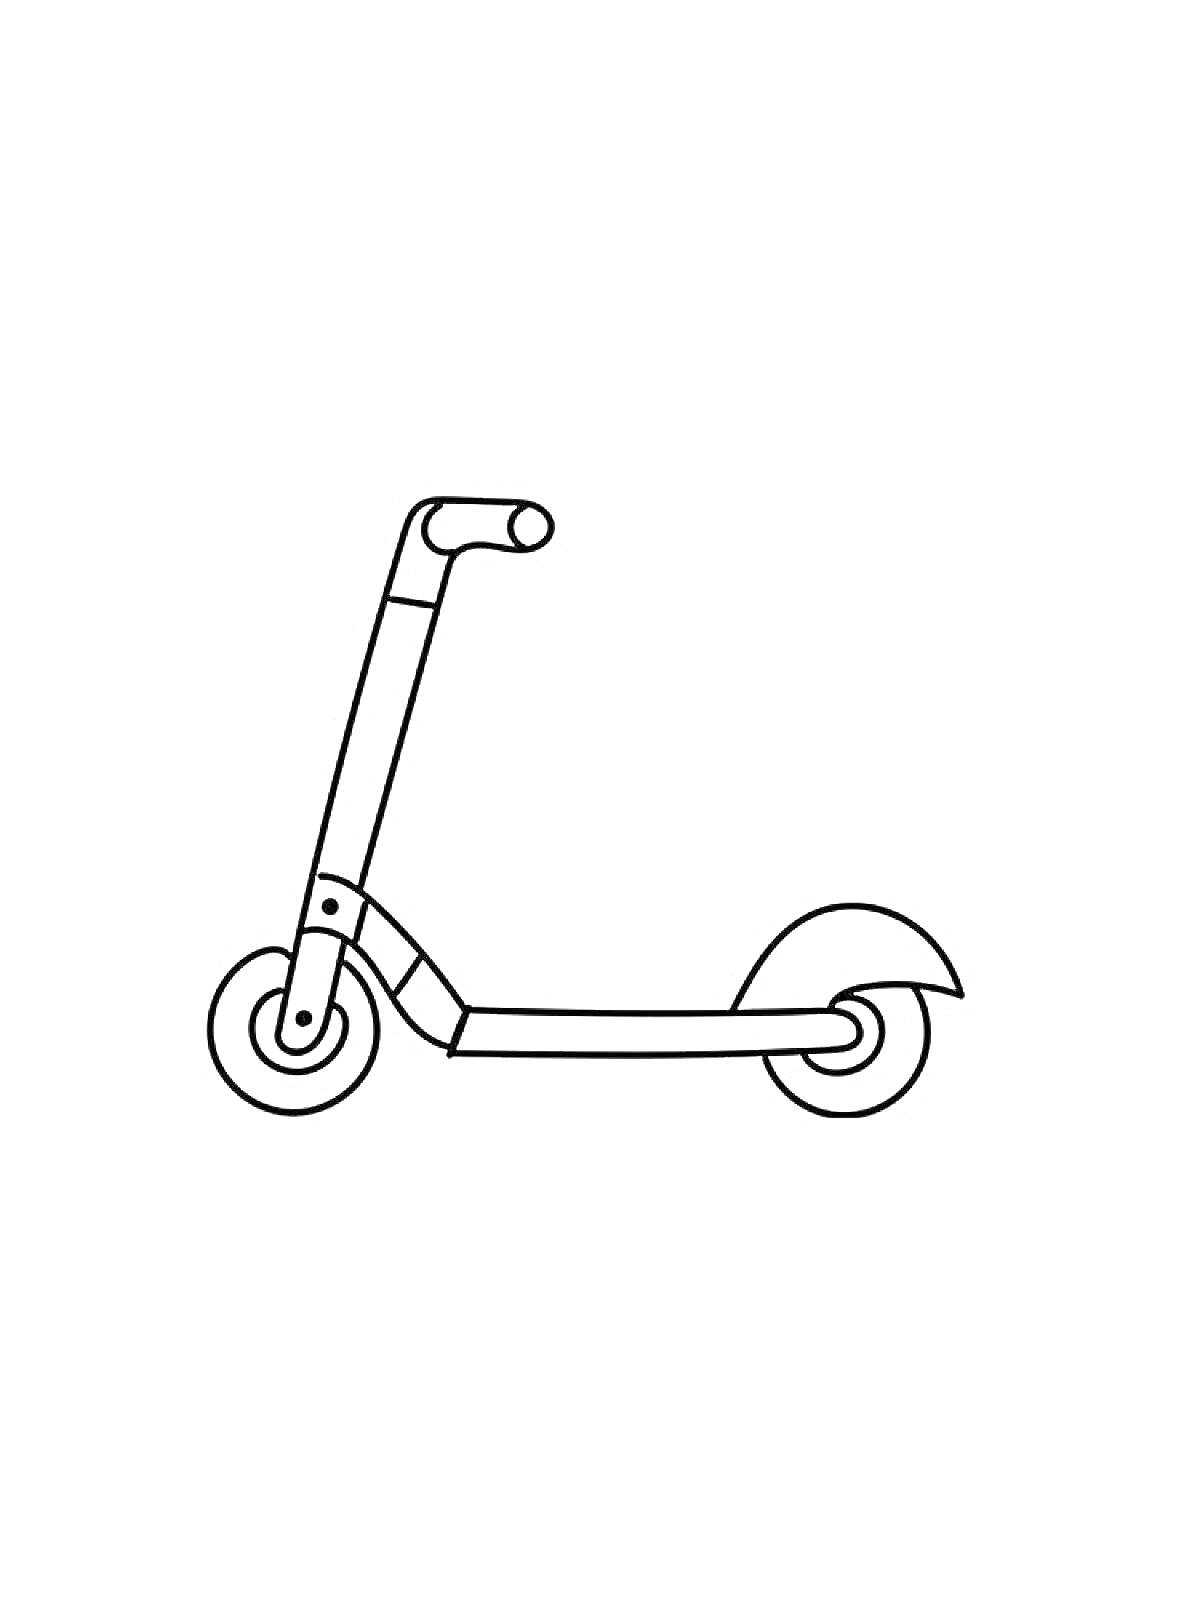 Раскраска Самокат с рулем, передним и задним колесами и крылом над задним колесом